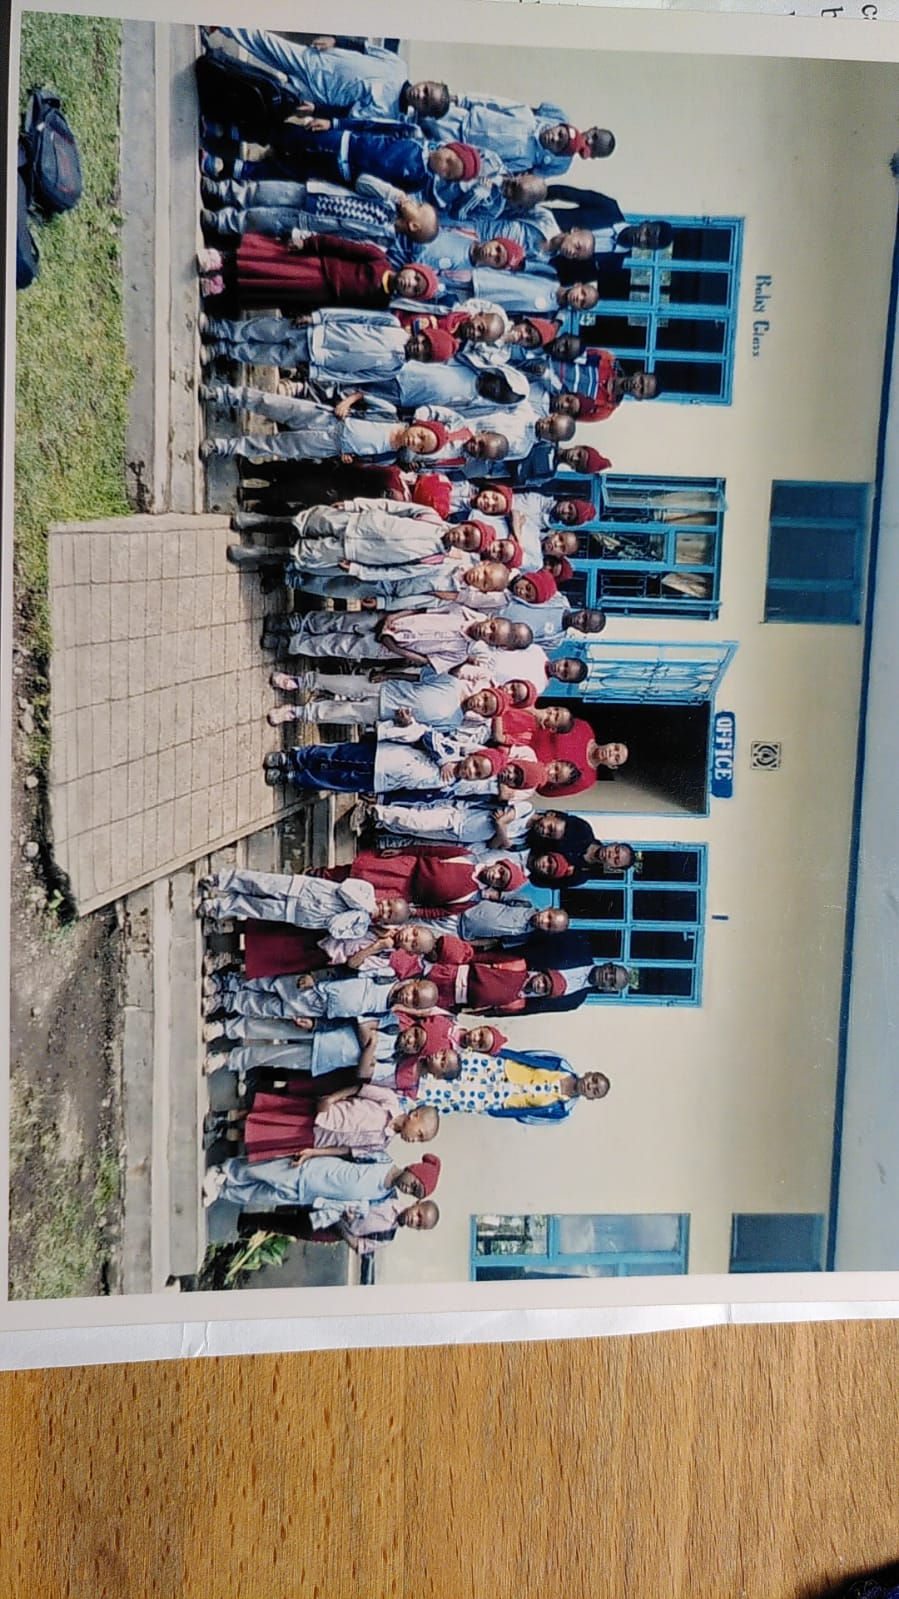 Unsere Partnerschule in Meru